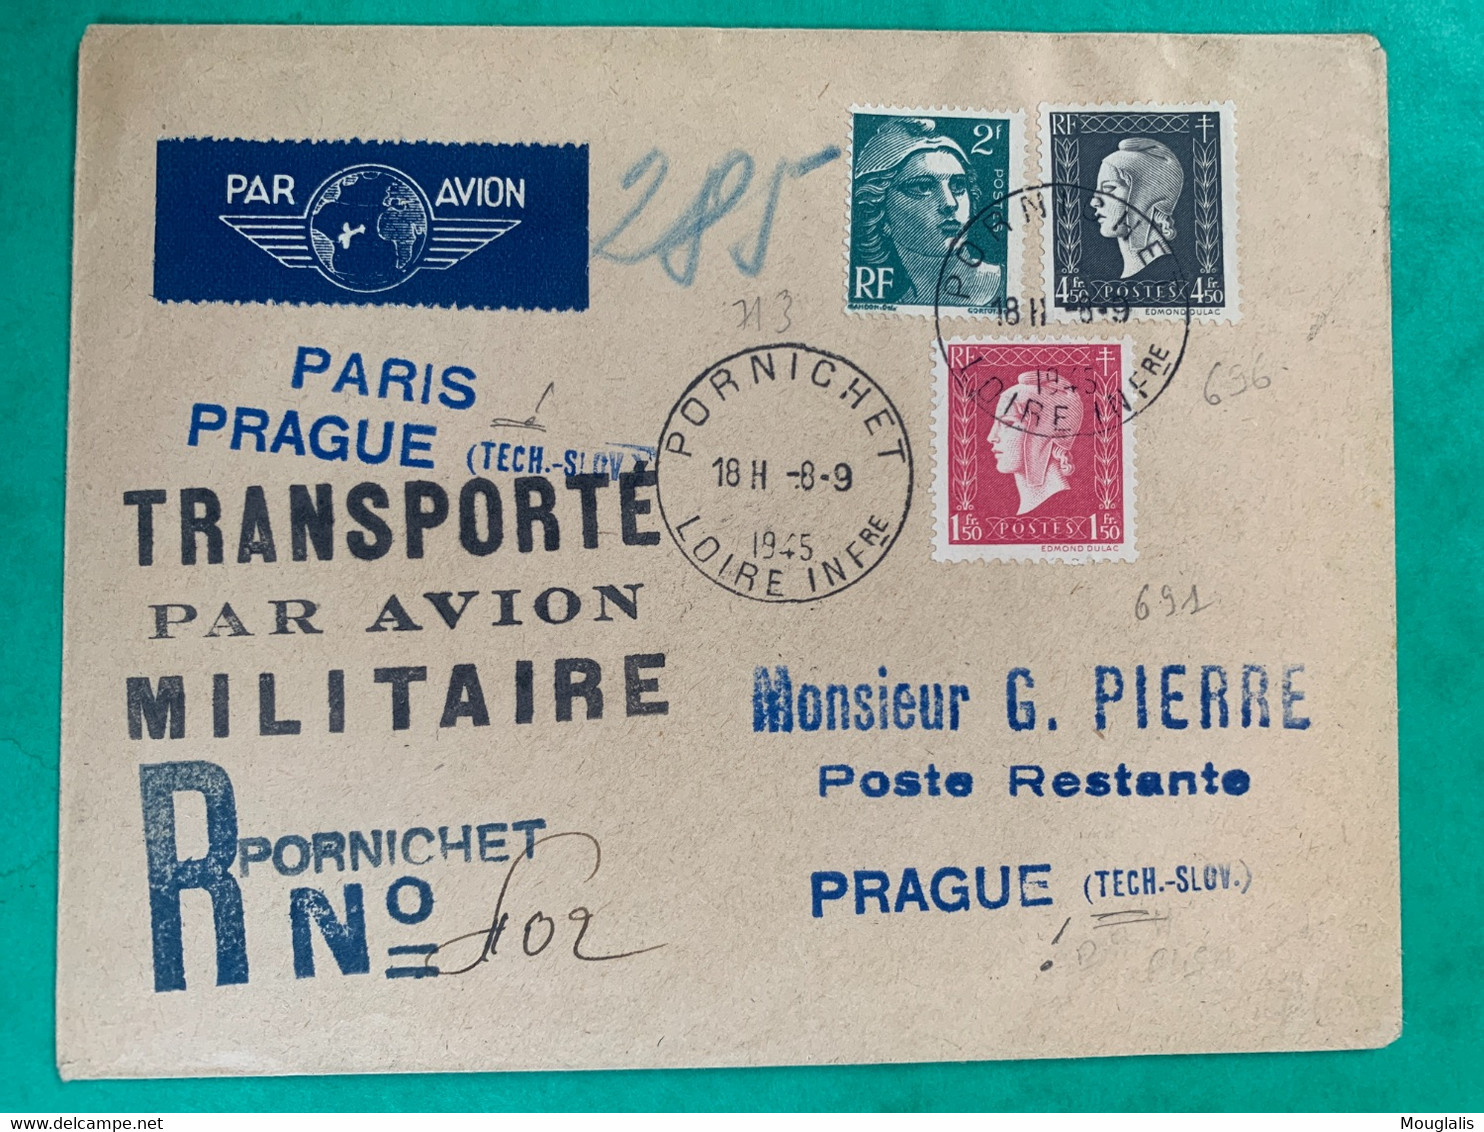 No 696 691 Et 713 Sur Enveloppe Transportée Par AVION MILITAIRE Recommandé Pornichet 1945 Vers PRAGUE Marcophilie TTB - Military Airmail